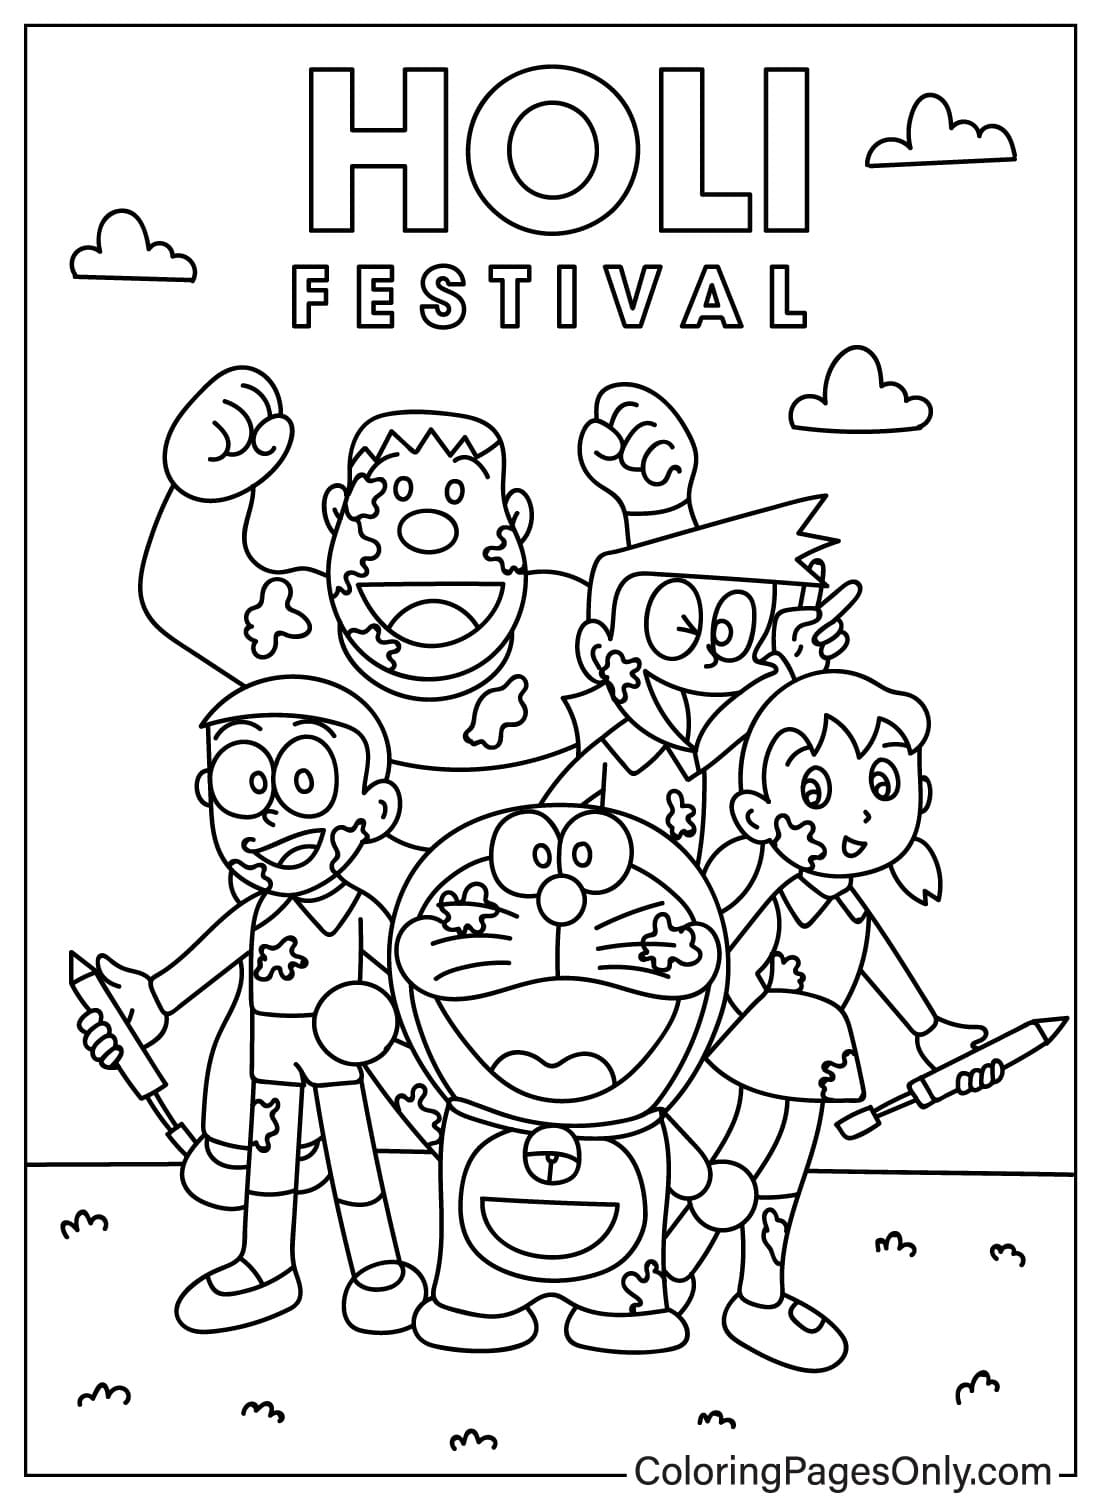 Página para colorear de dibujos animados de Holi de Holi